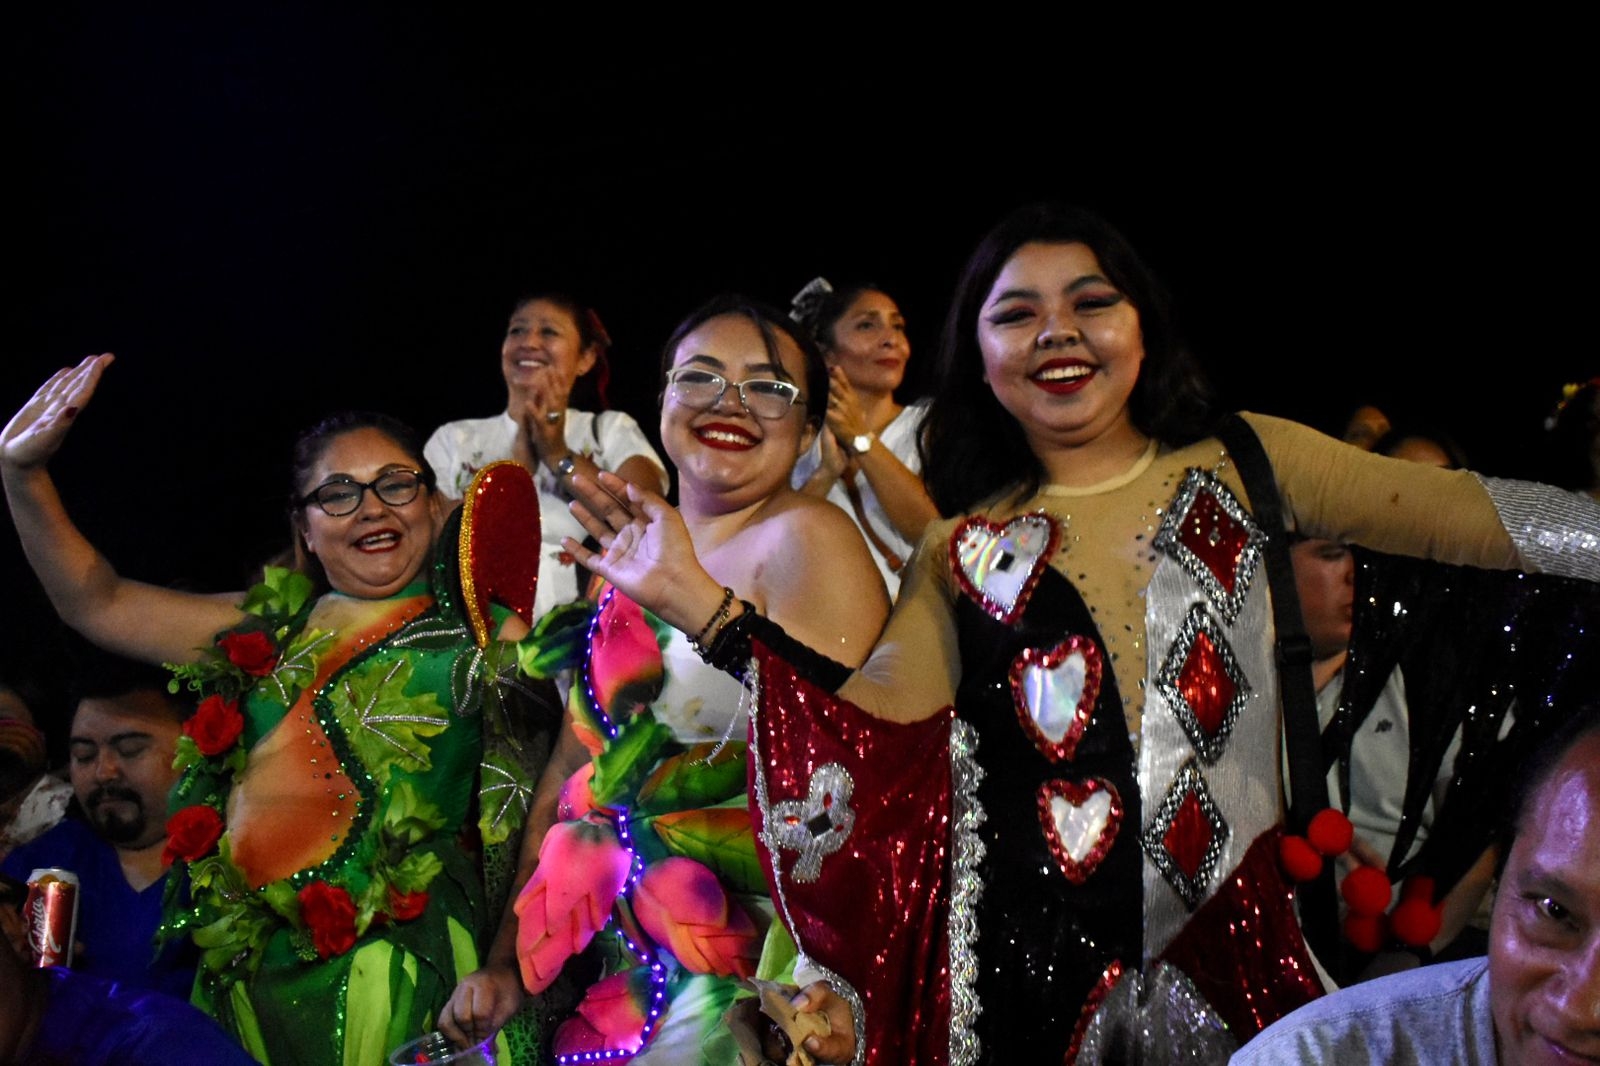 El Lunes Regional se vive con algarabía en el Carnaval de Mérida
